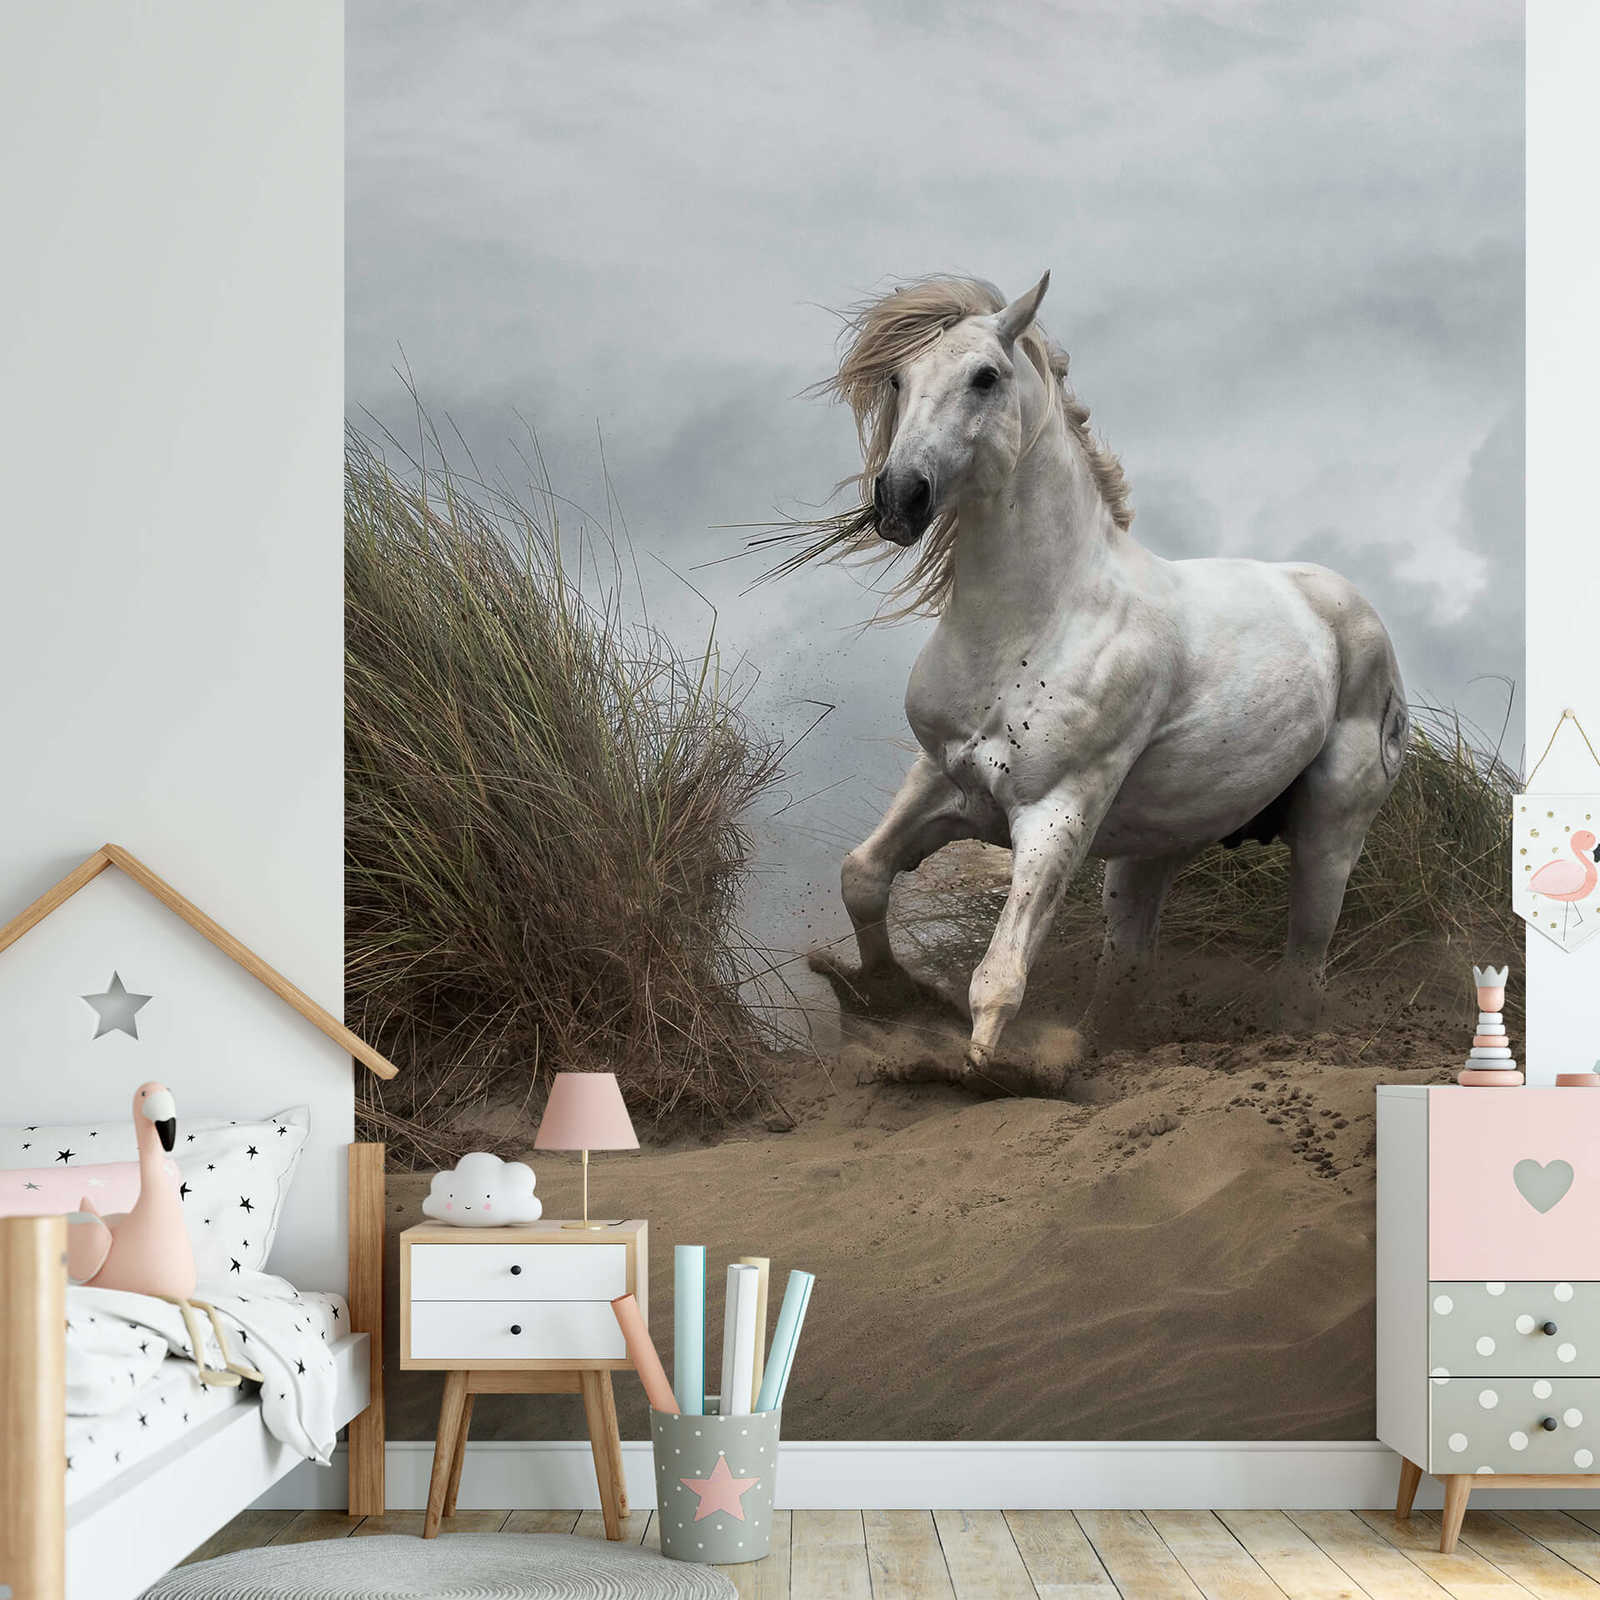             Papel pintado Dunas de playa con caballo - Blanco, crema, gris
        